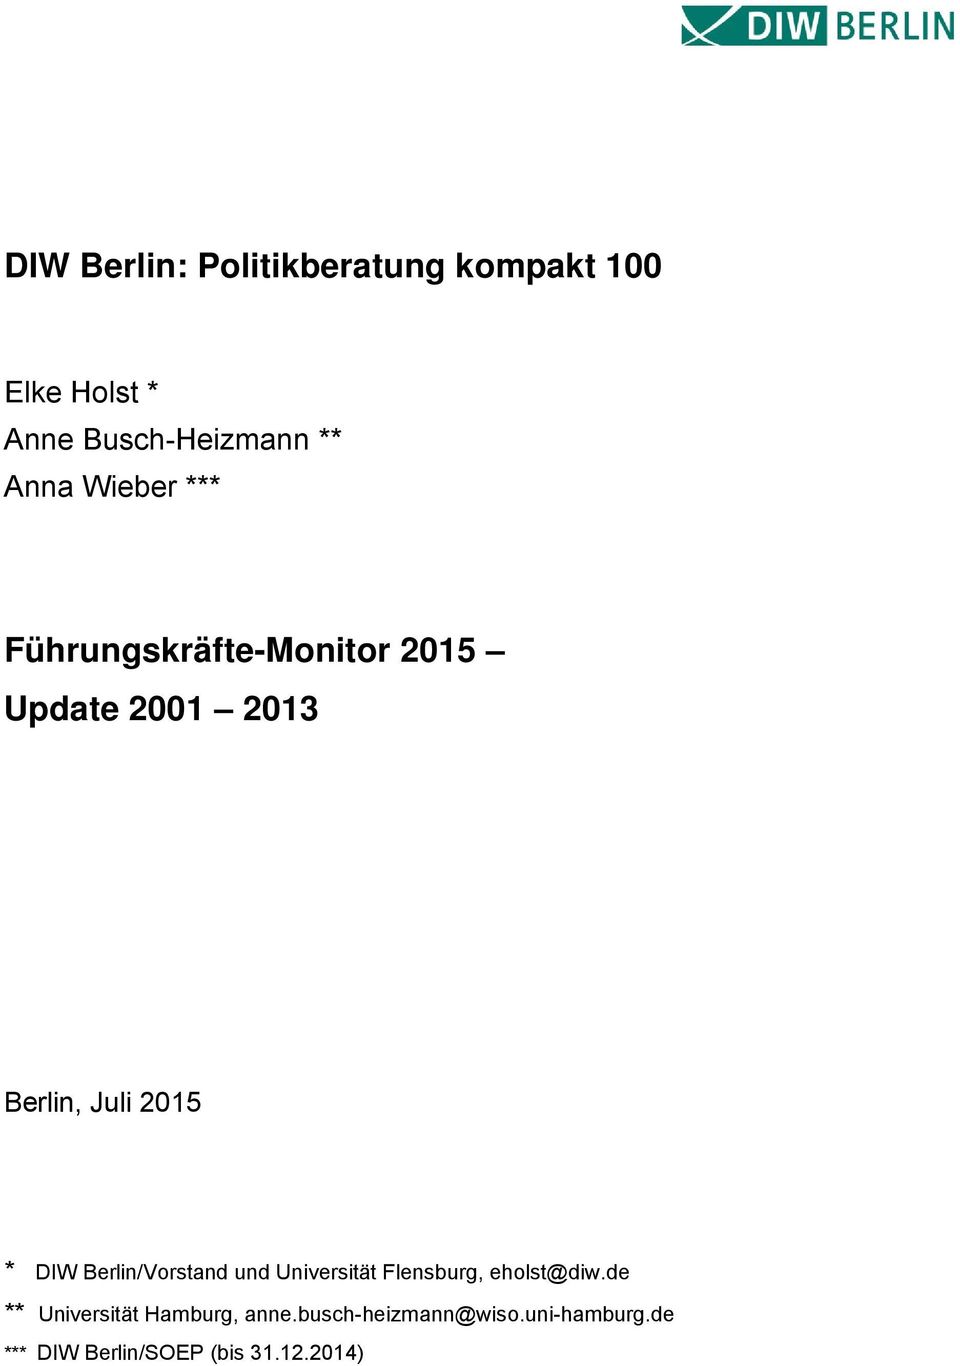 Berlin/Vorstand und Universität Flensburg, eholst@diw.